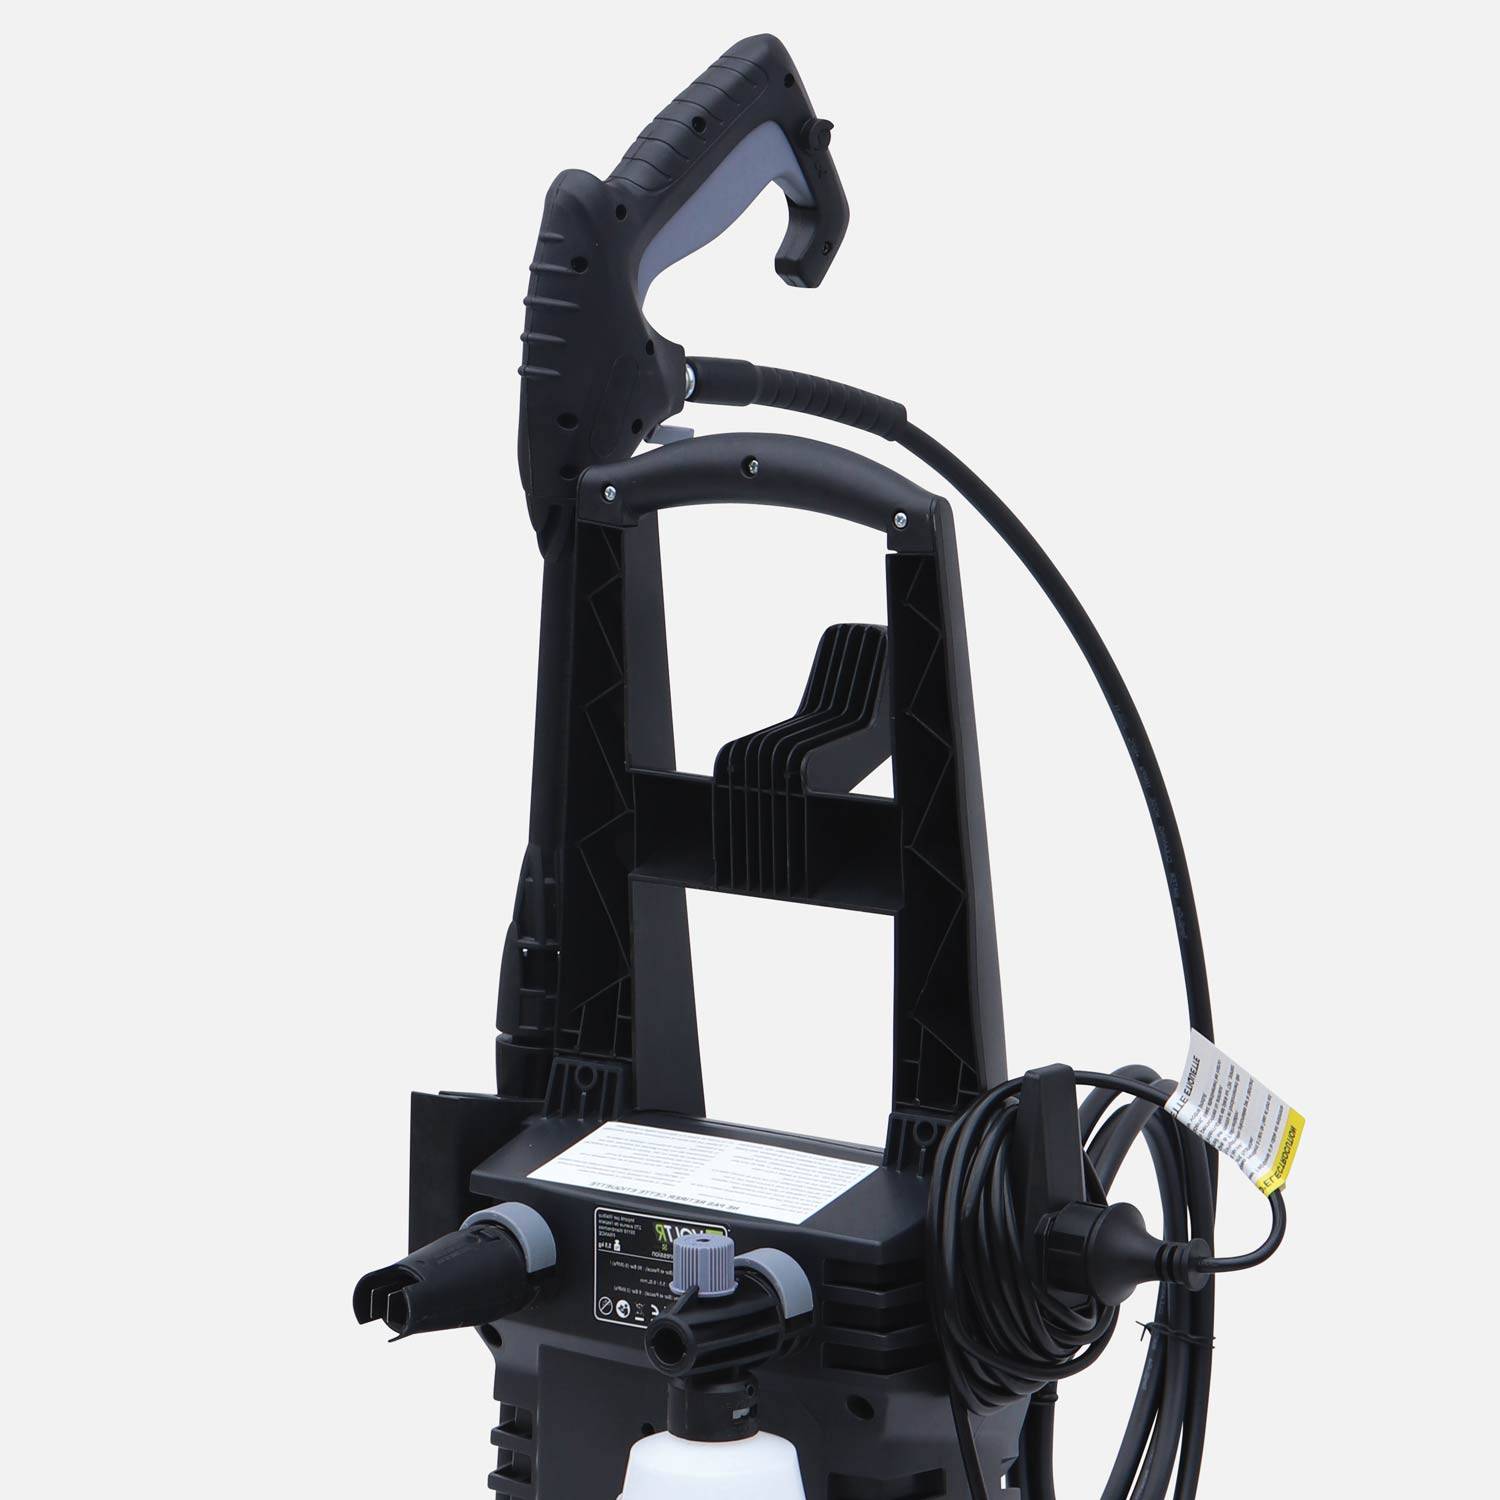 VOLTR - Limpiador alta presión 135 bar 1700W - Pack de accesorios (boquilla detergente, rotabuse, variable), con asa, ruedas y start/stop automático Photo2